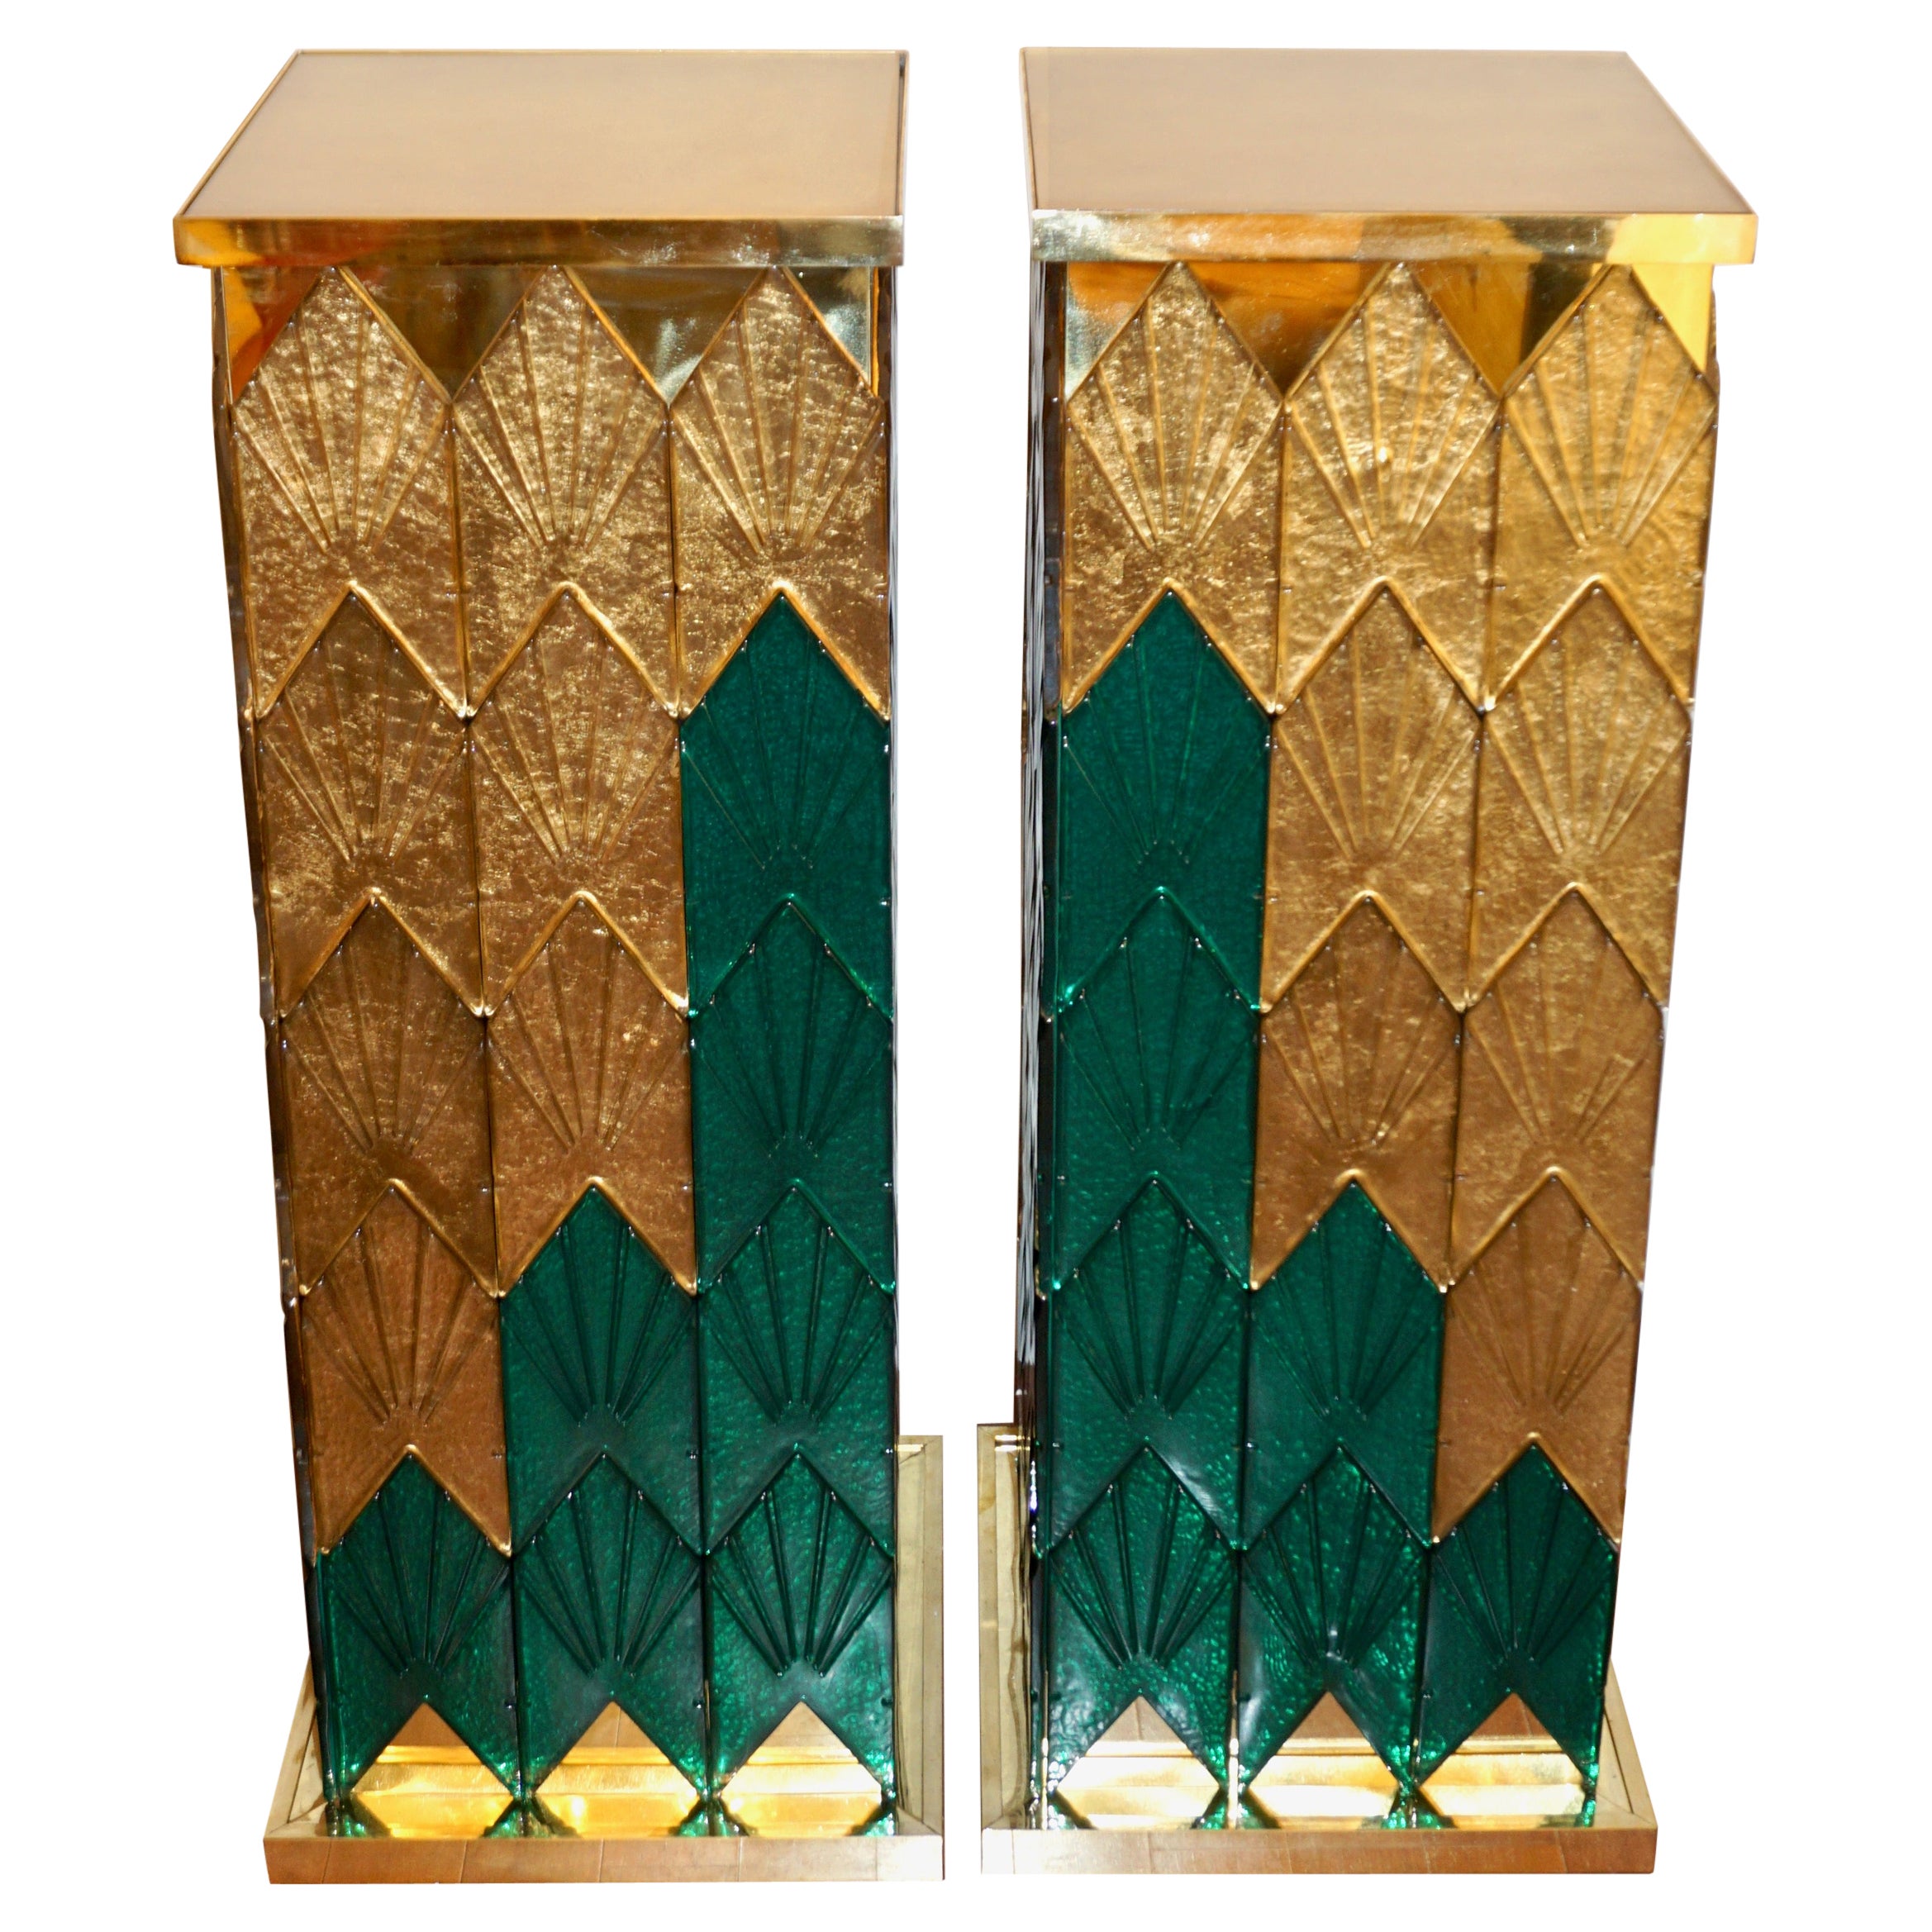 Piédestaux en bois et laiton en verre de Murano vert et or de style Art Déco italien sur mesure